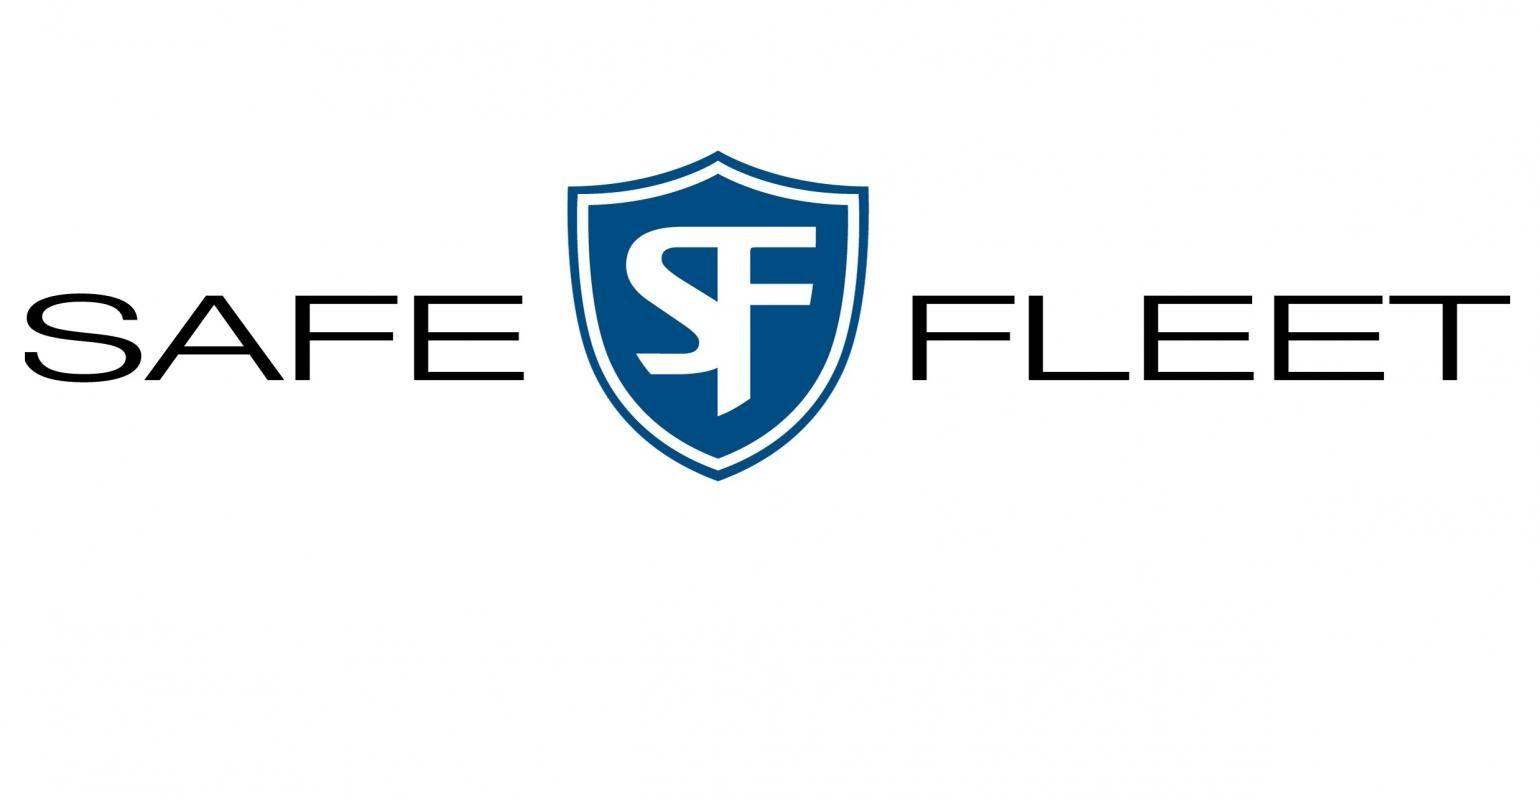 Fleet Logo - Safe Fleet to acquire American Van in 'game-changing' deal | Trailer ...